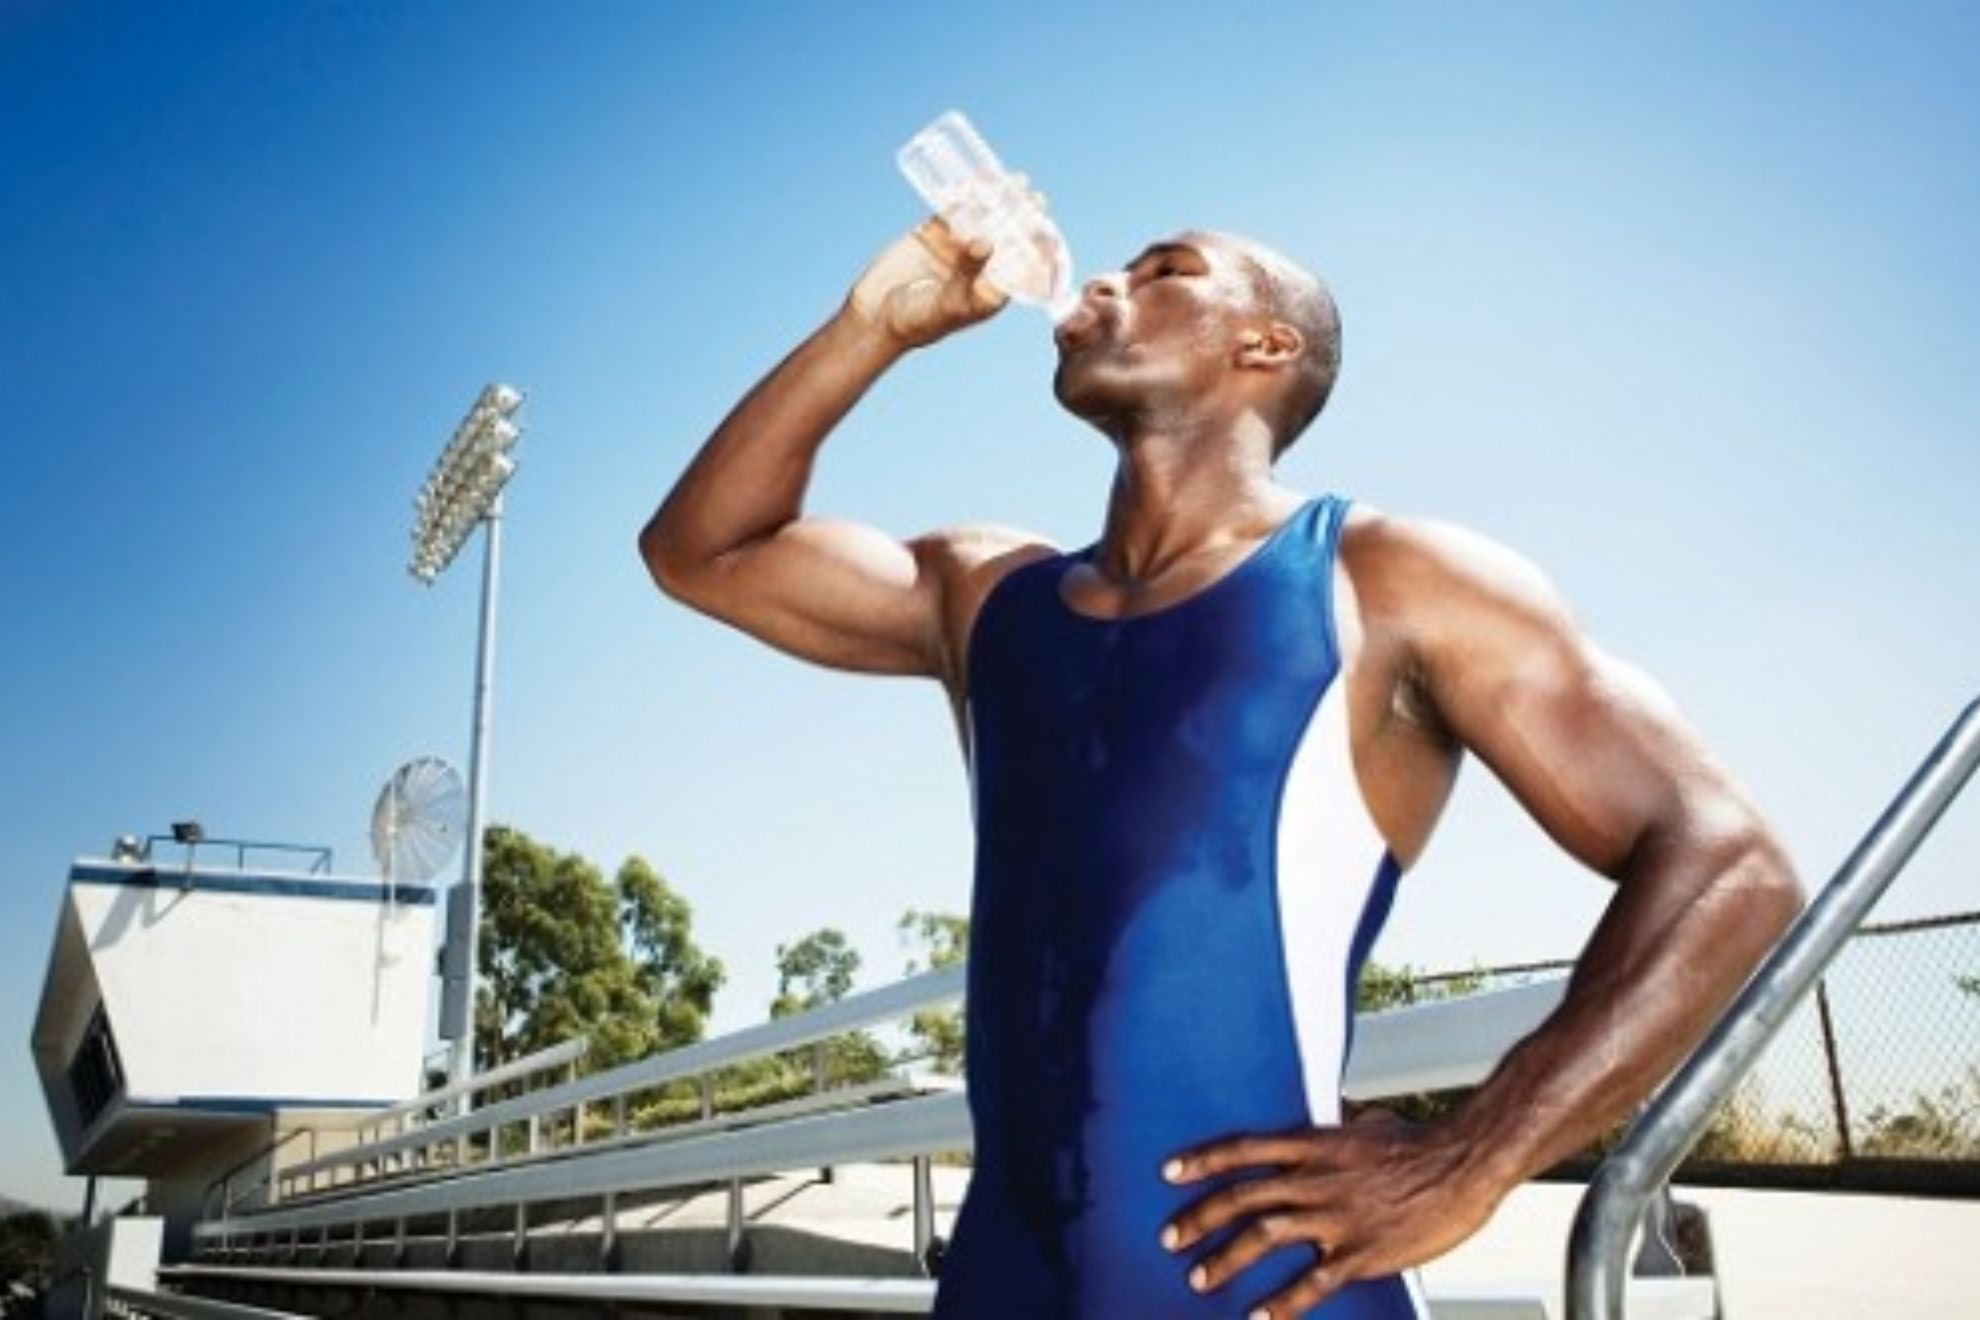 Cu�nto tiempo puedes estar sin beber agua haciendo deporte y c�mo afecta al cuerpo la deshidrataci�n